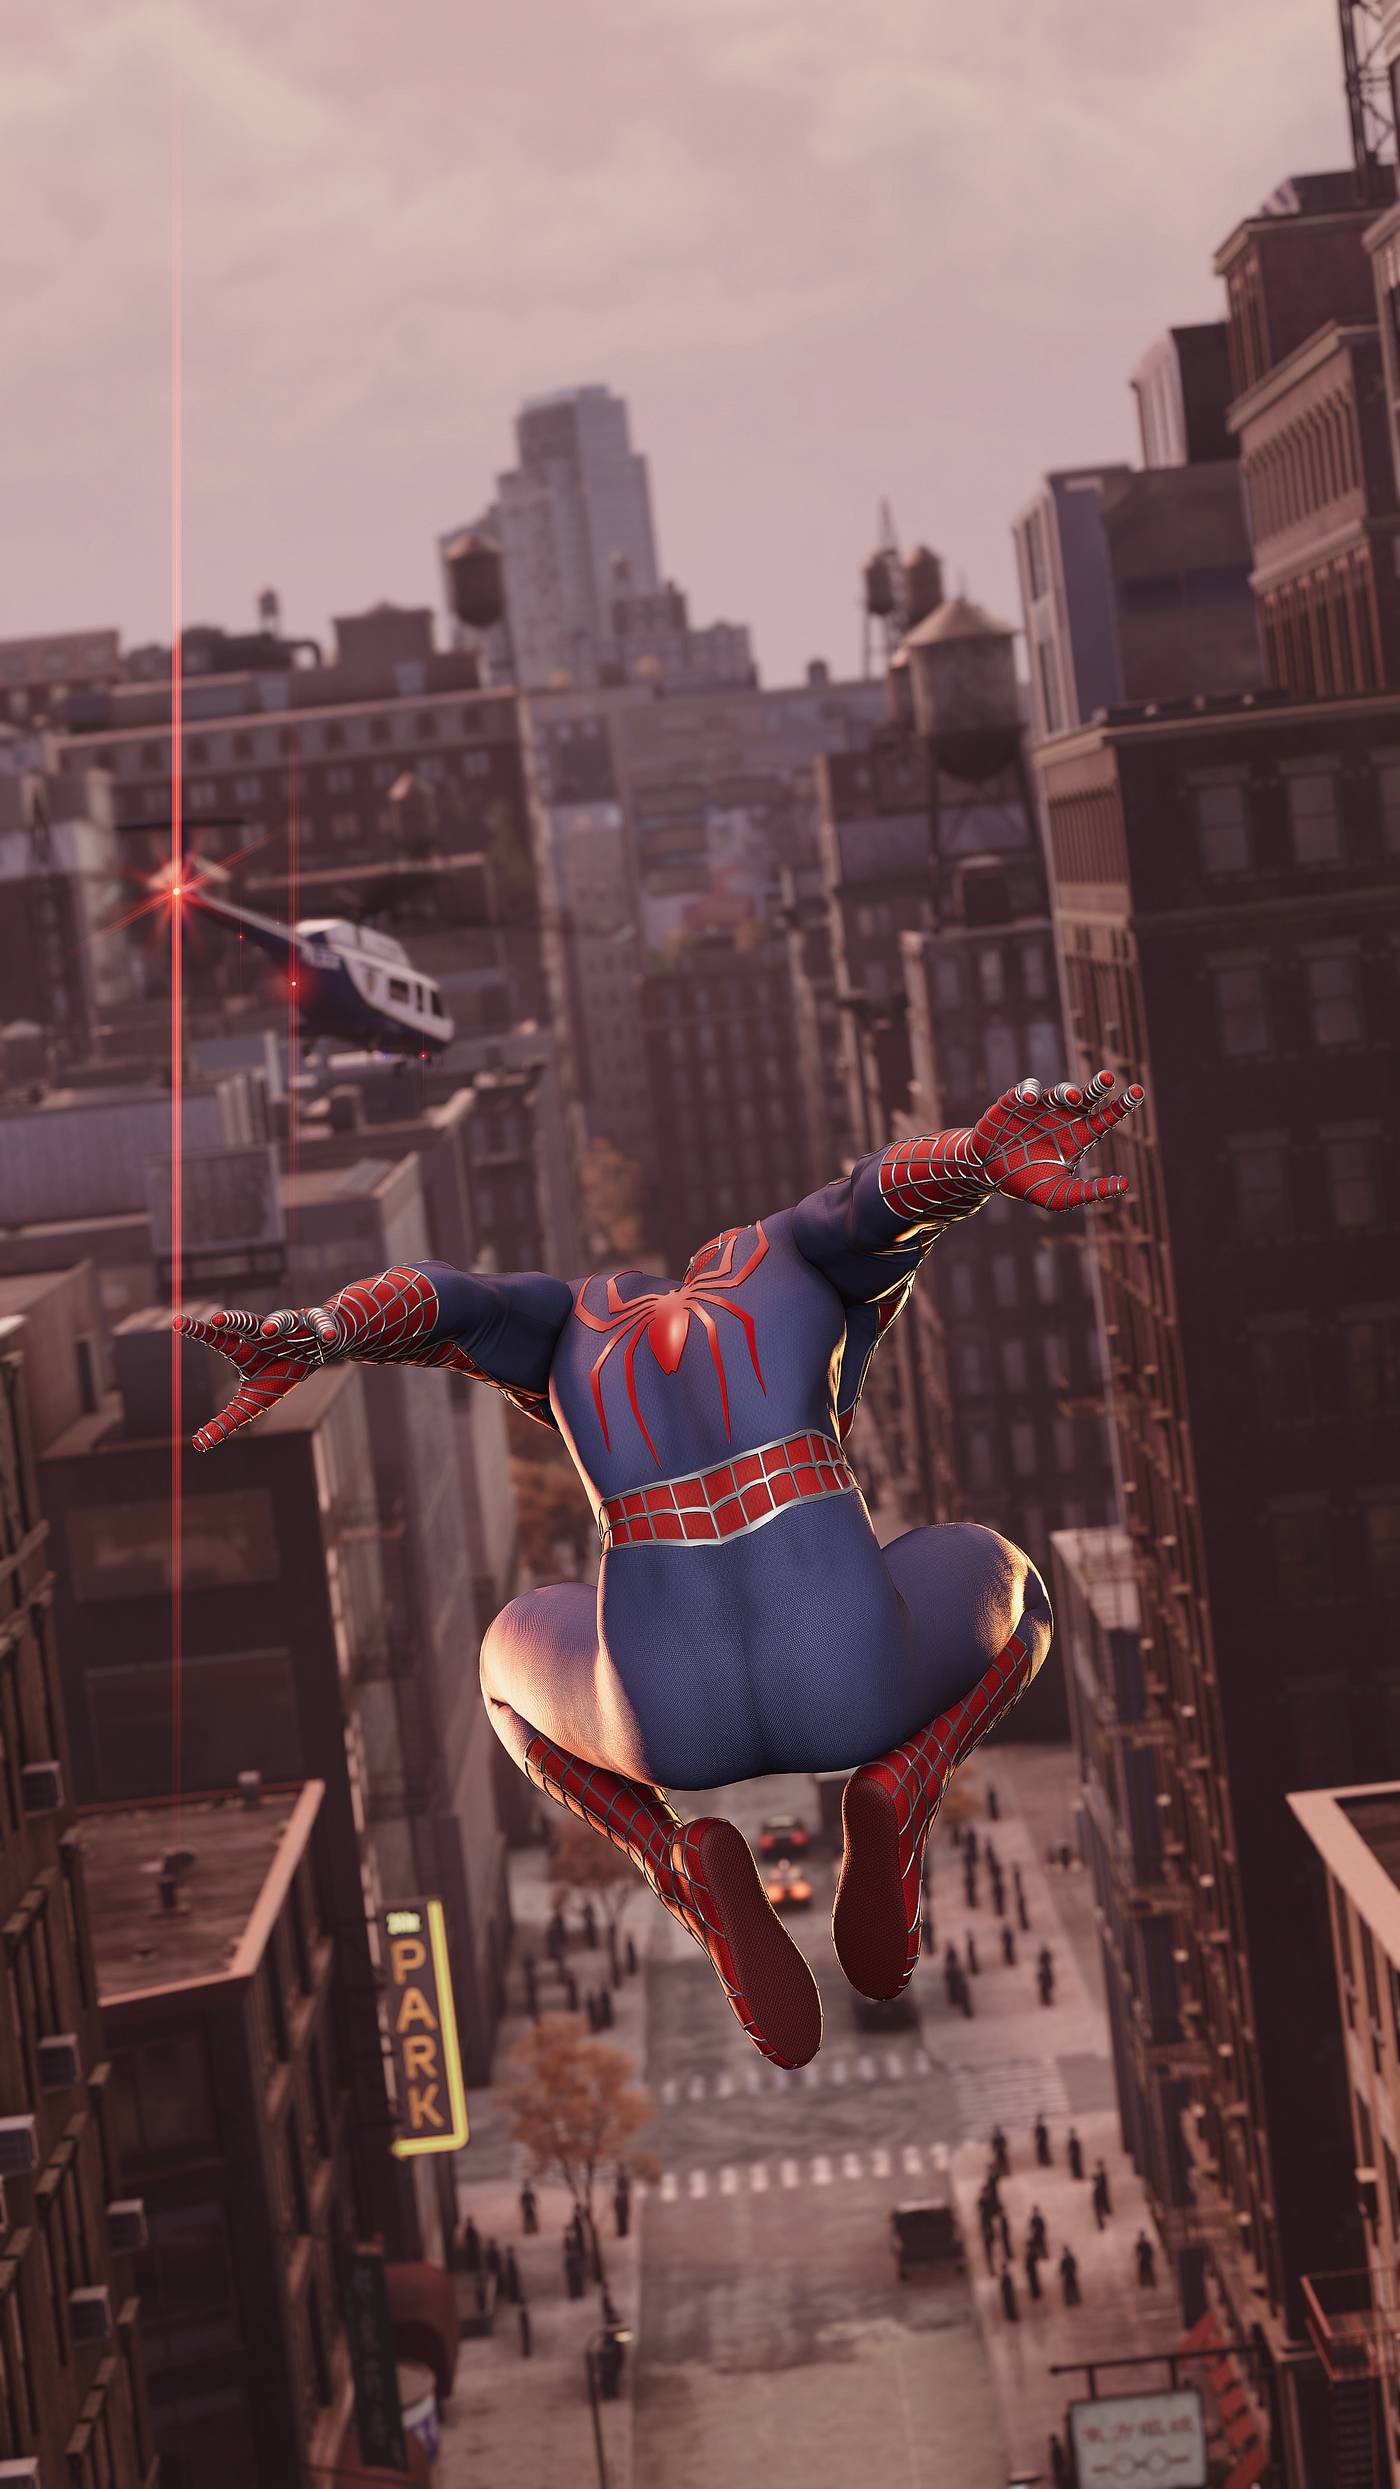 Marvel's Spider-Man Remastered chegará ao PC em agosto